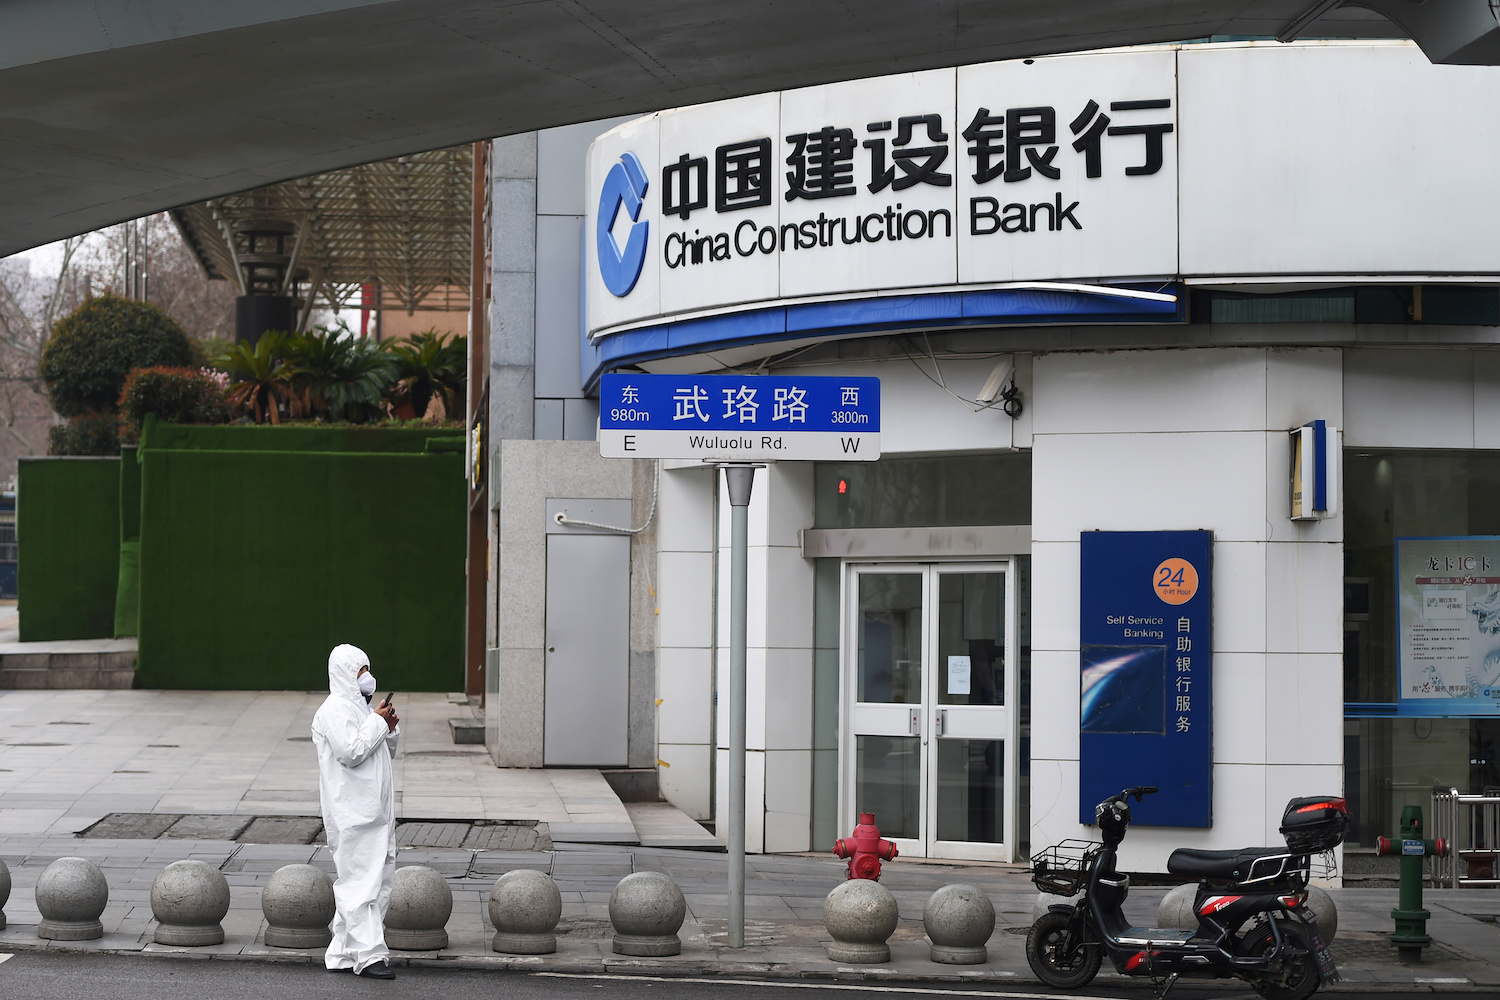 Construction bank of china. China Construction Bank. Bank of China. Industrial and commercial Bank of China.